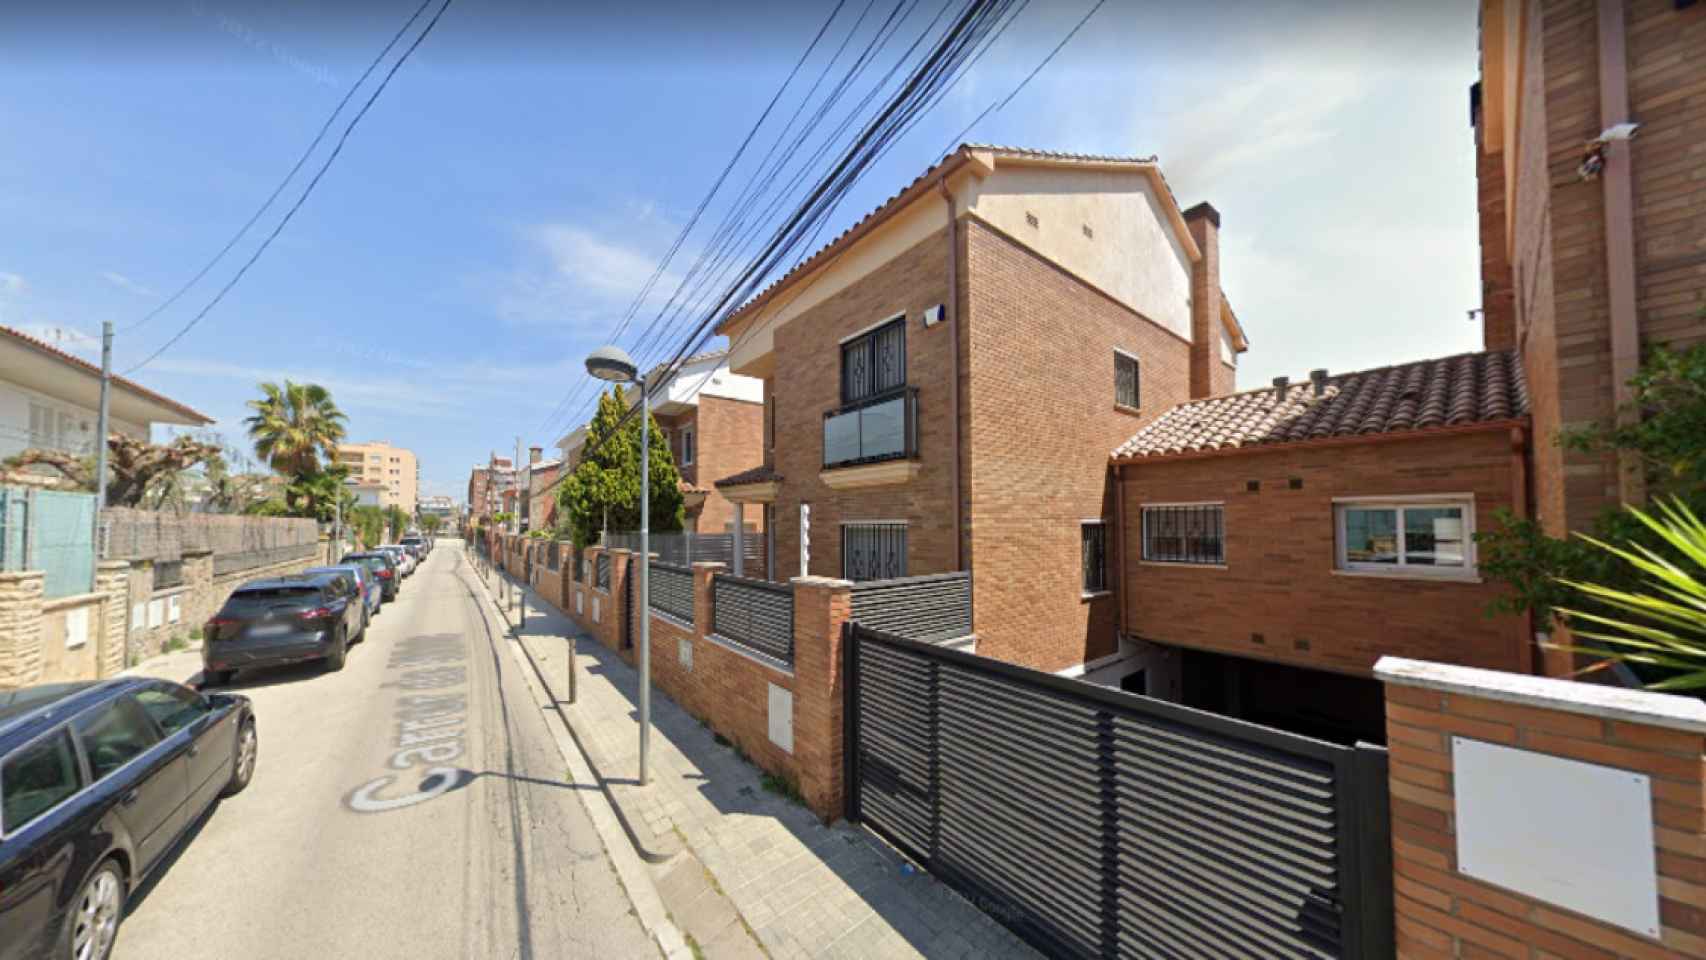 Calle Núria de Premià de Mar, lugar donde el detenido mató a su compañero de piso / GOOGLE MAPS